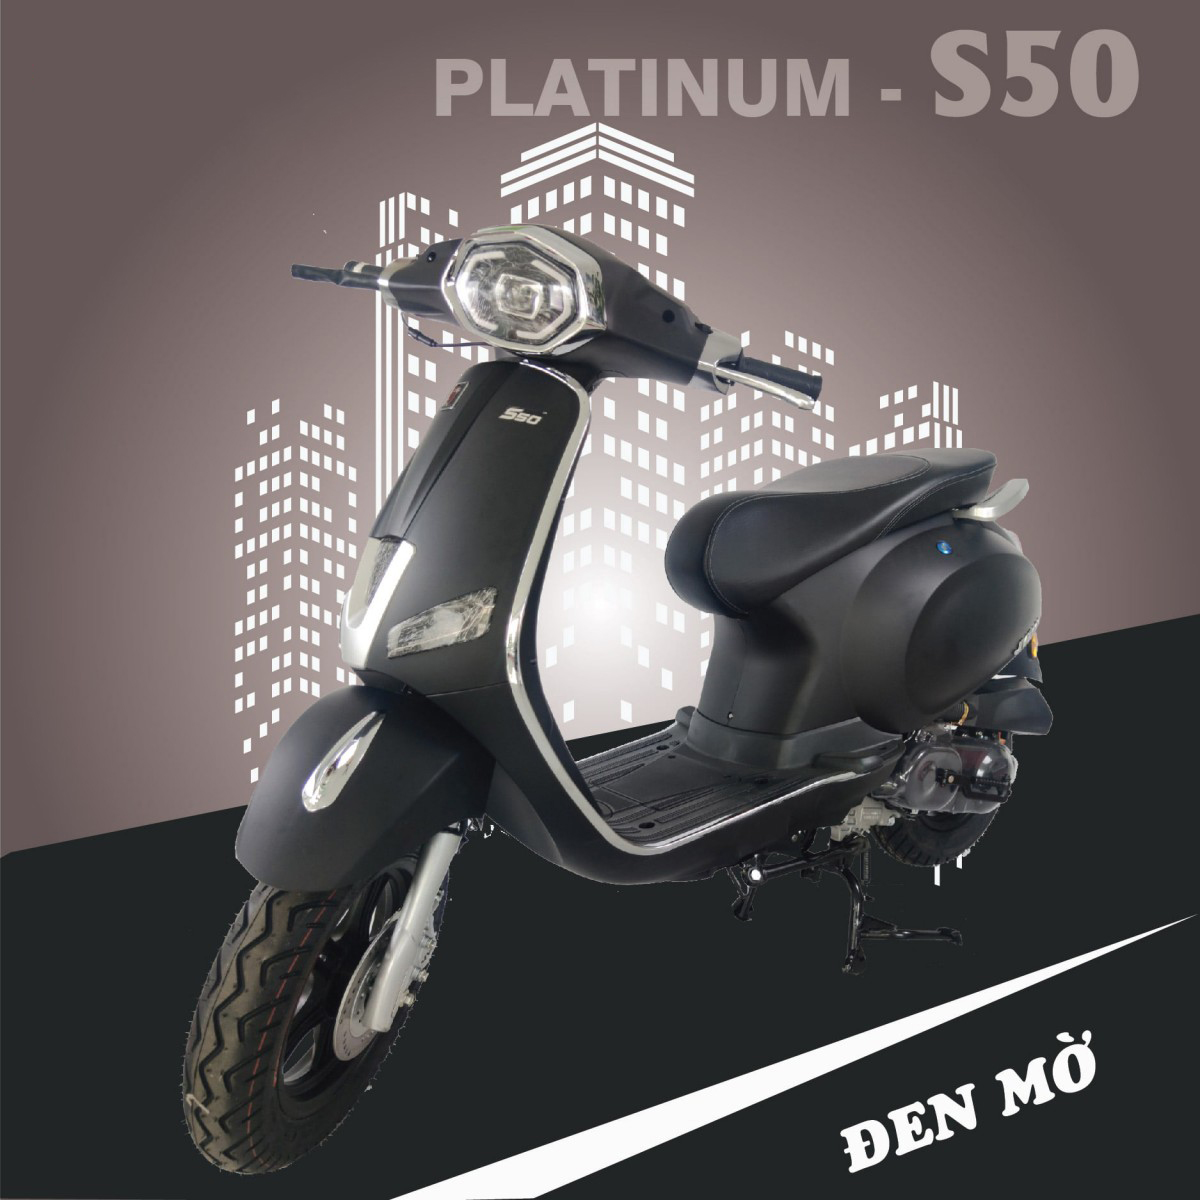 Xe ga 50cc Jvc Vespa Platinum 2021 màu đen mờ